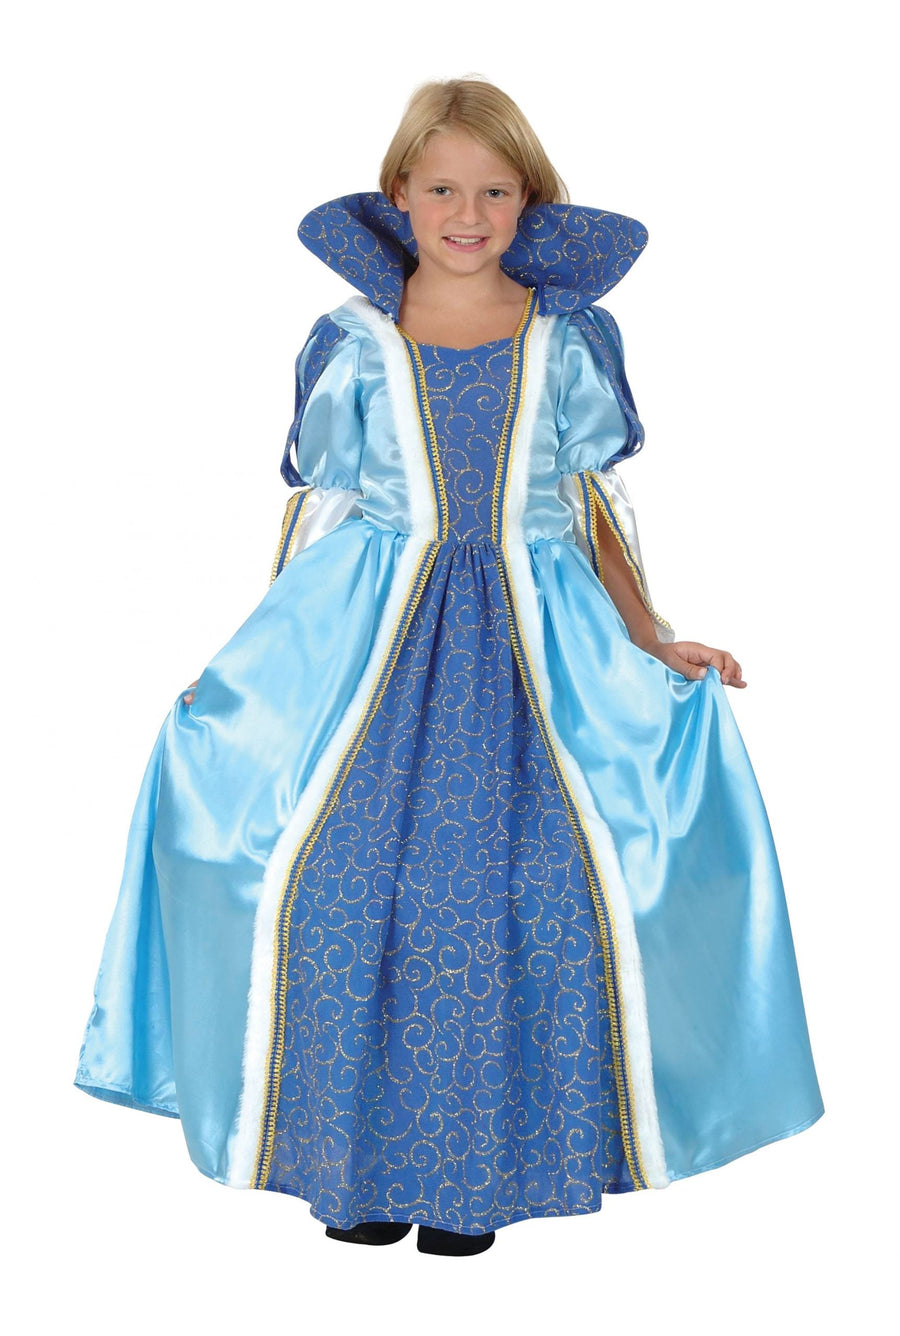 Girls Blue Princess Medium Childrens Costume Female 7- 9 Years Halloween_1